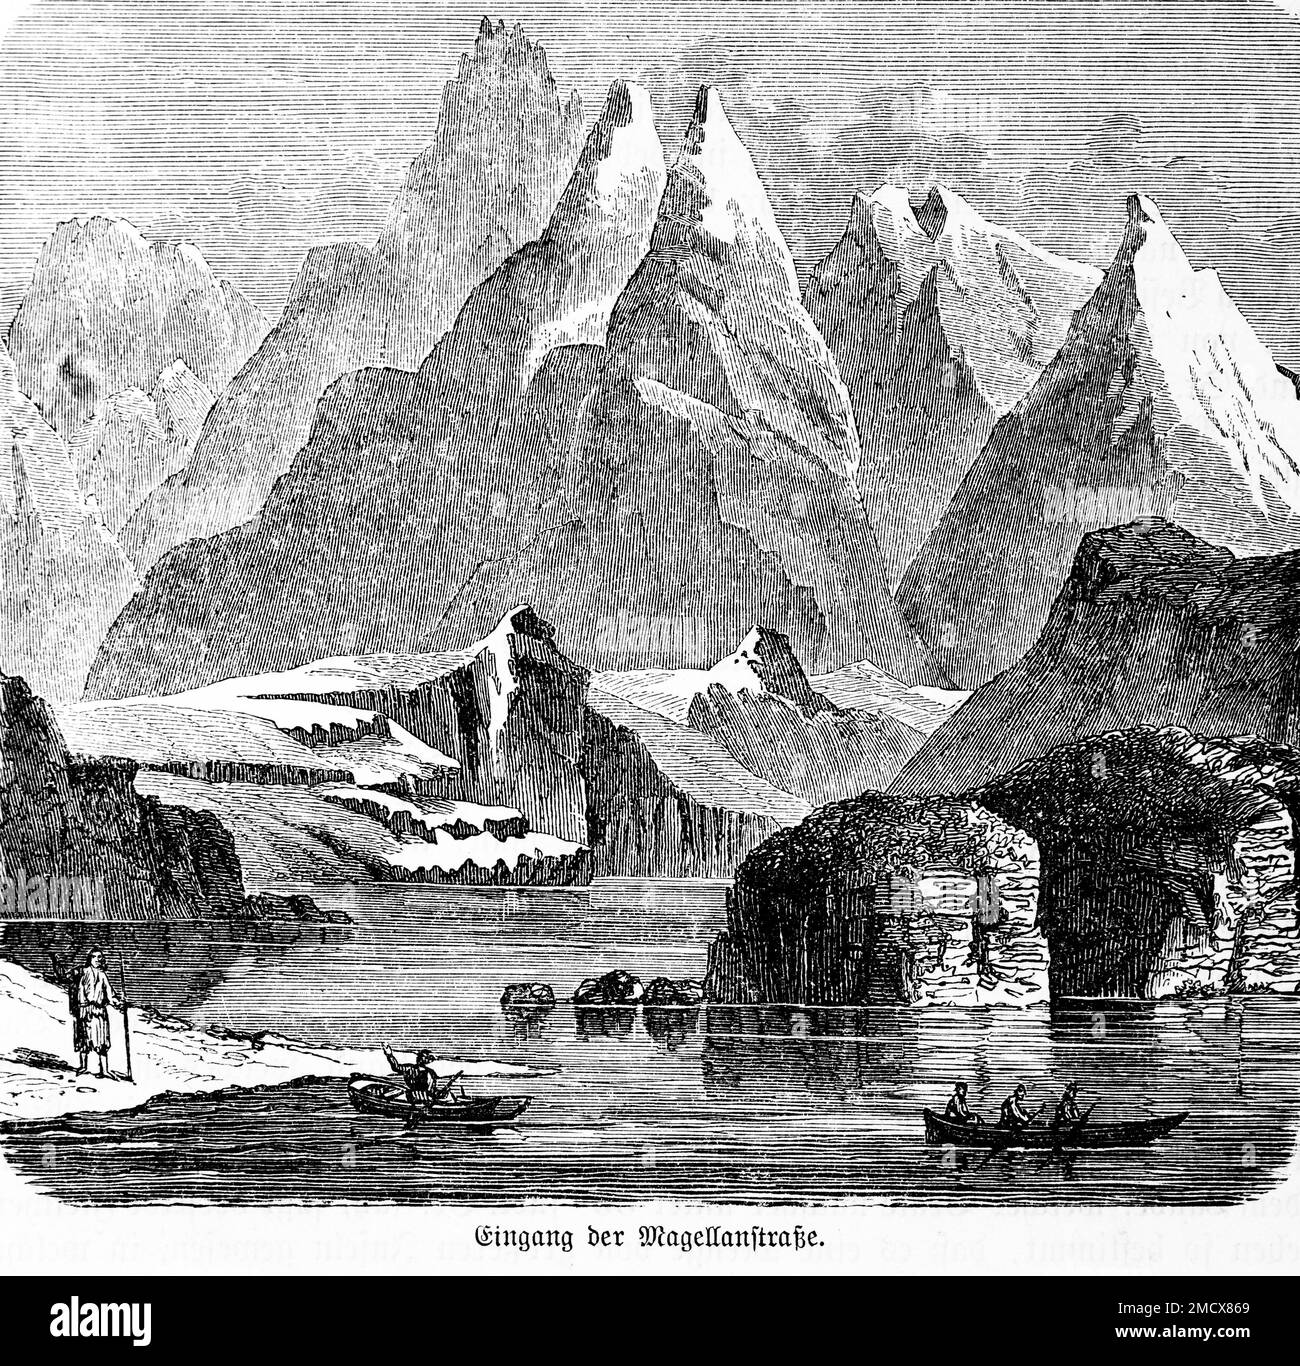 Magellanstraße, Berglandschaft, Schnee, Kälte, Einsamkeit, Menschen, Ruderboot, Rudern, historische Illustration 1885 Stockfoto